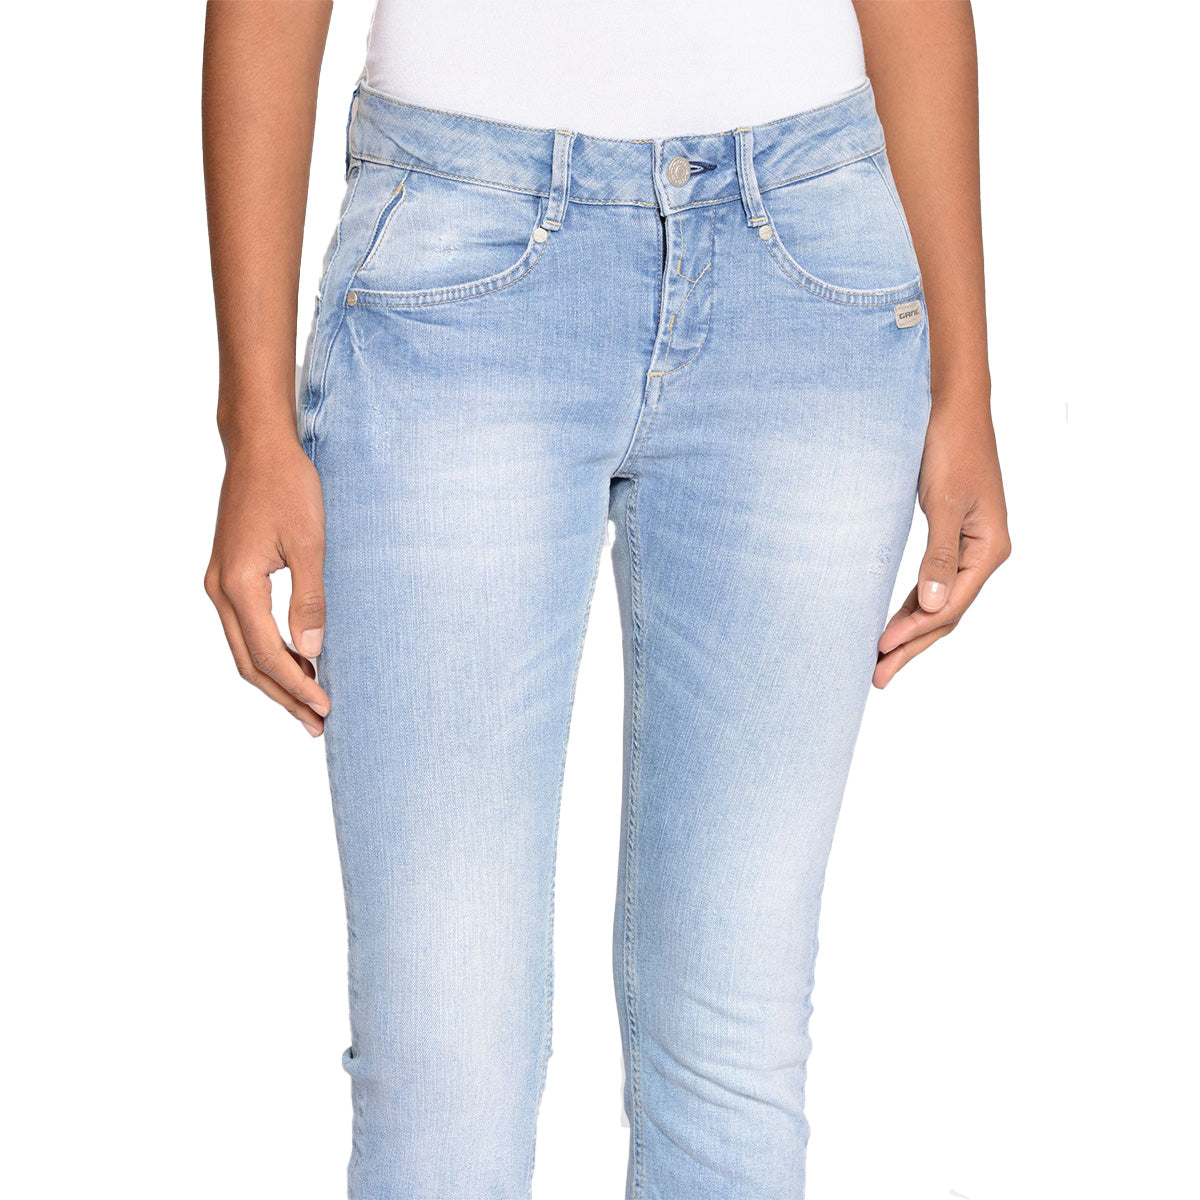 Gang Damen Jeans 94Nele X-Cropped skinny fit